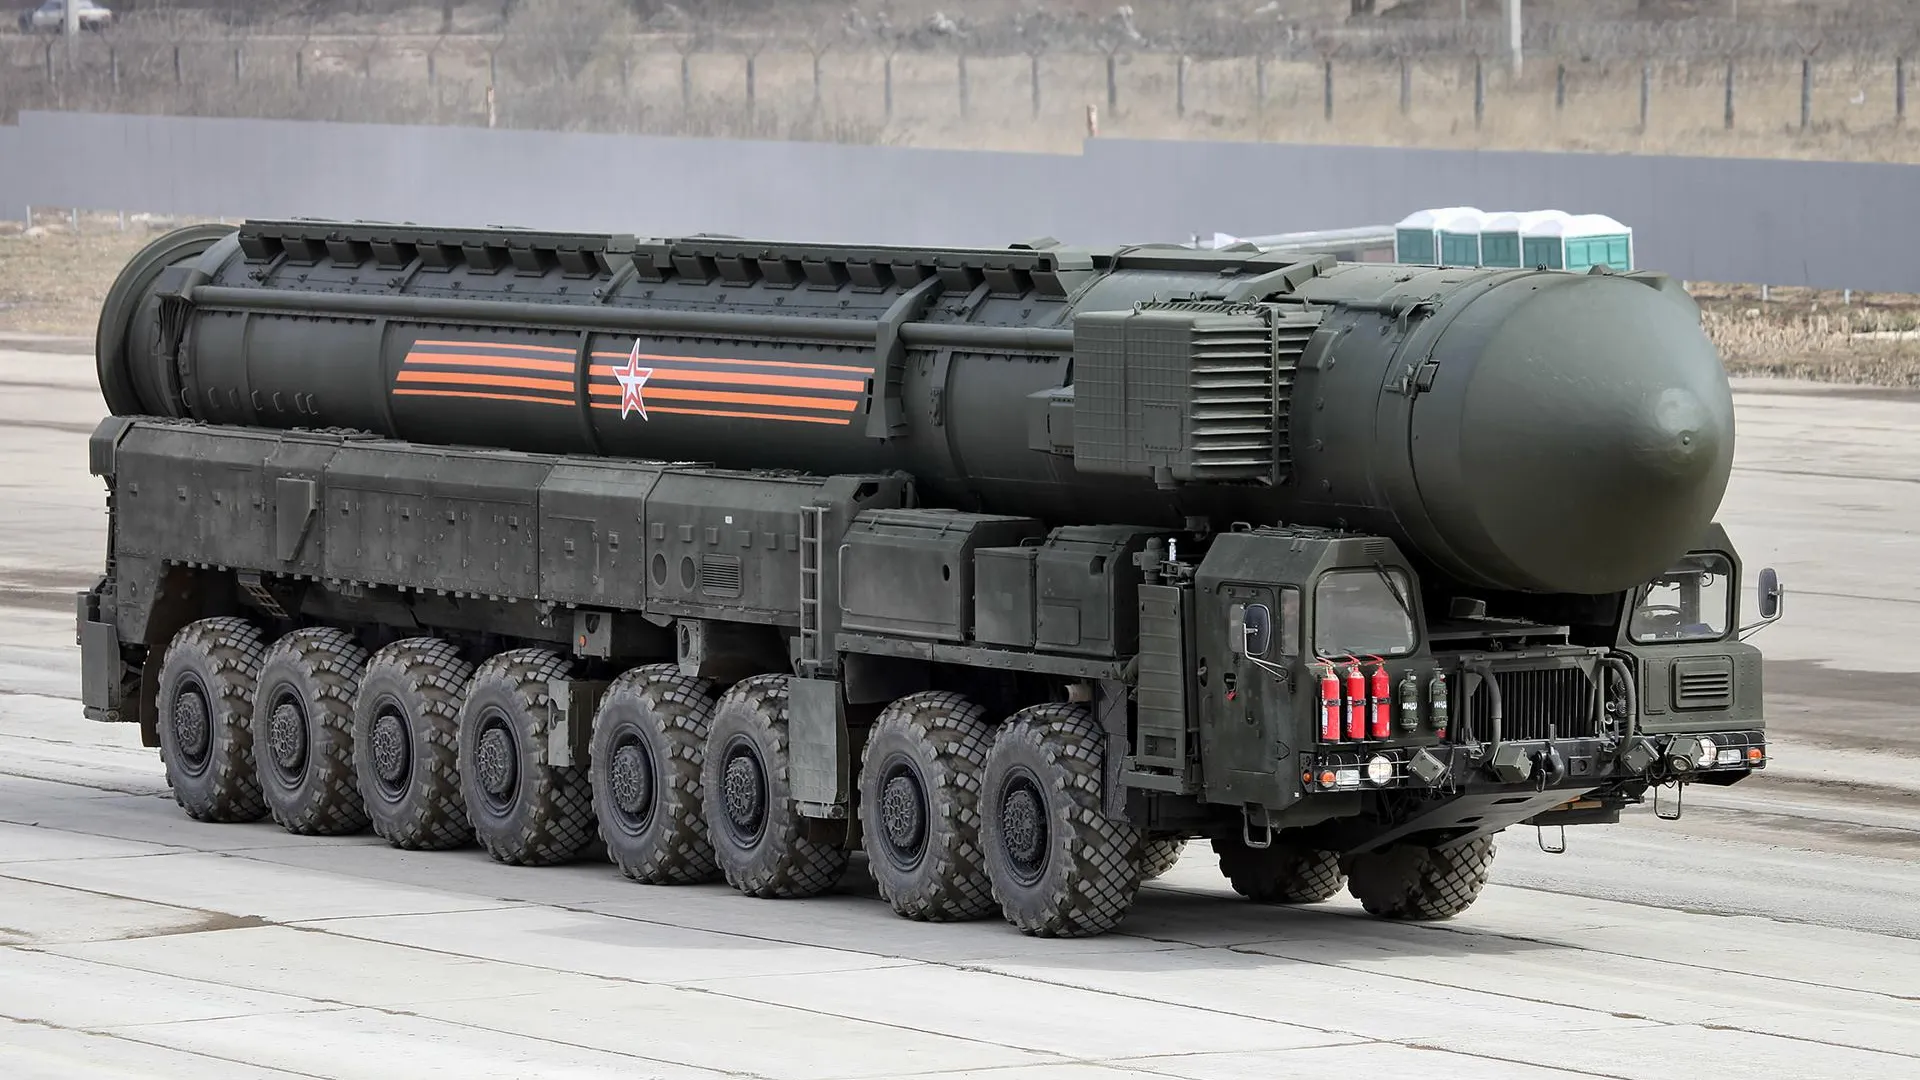 РФ не исключает размещения ядерного оружия в ответ на ракеты США в ФРГ